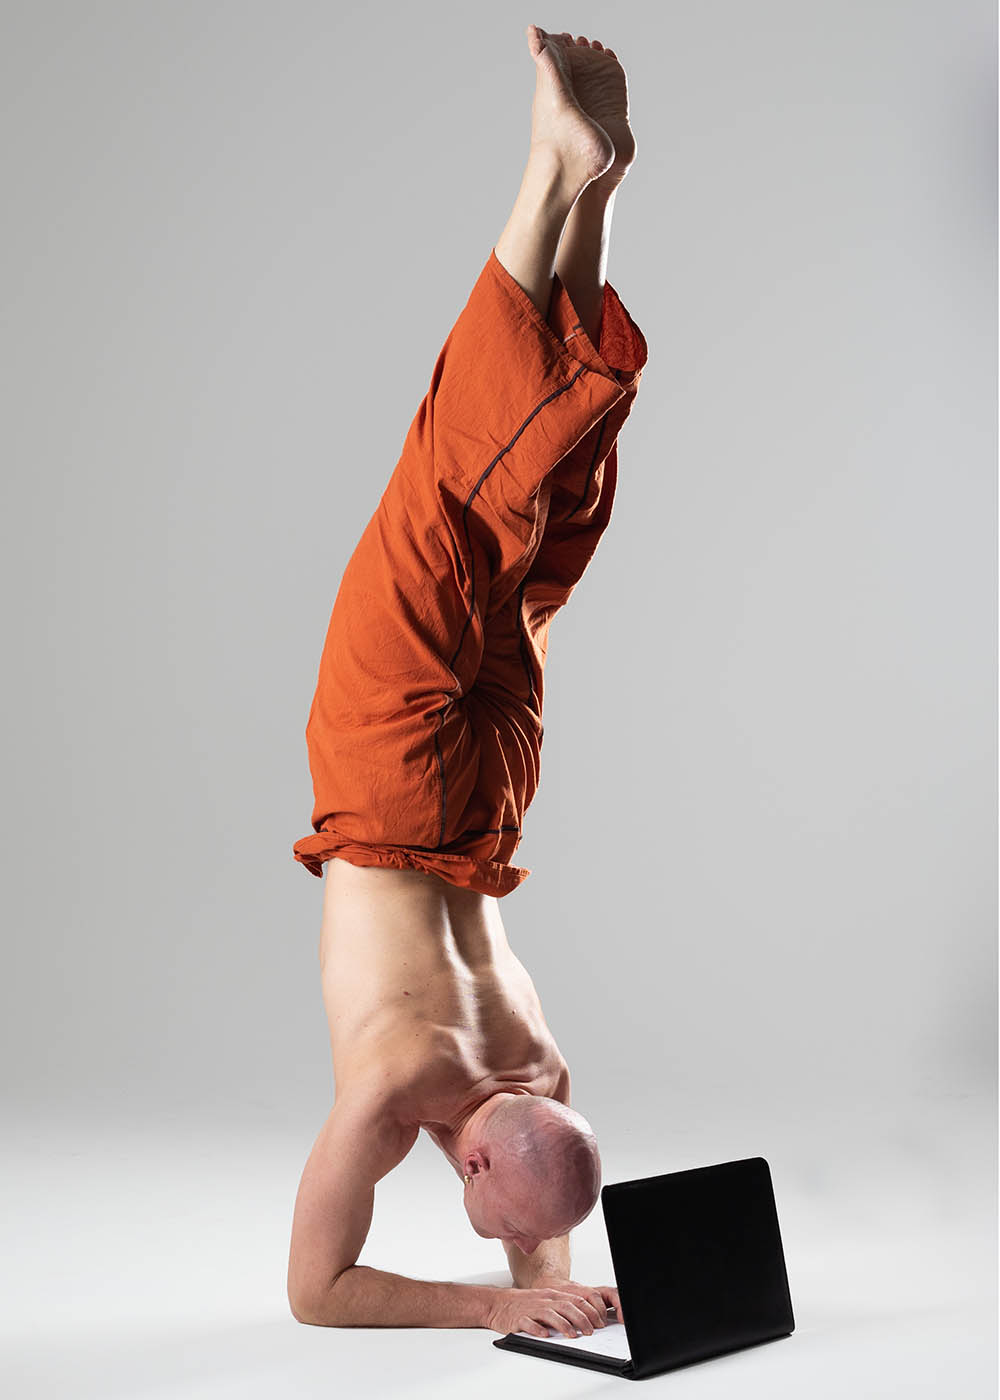 Christian Bechtel macht Handstand und tippt gleichtzeitig auf Laptop